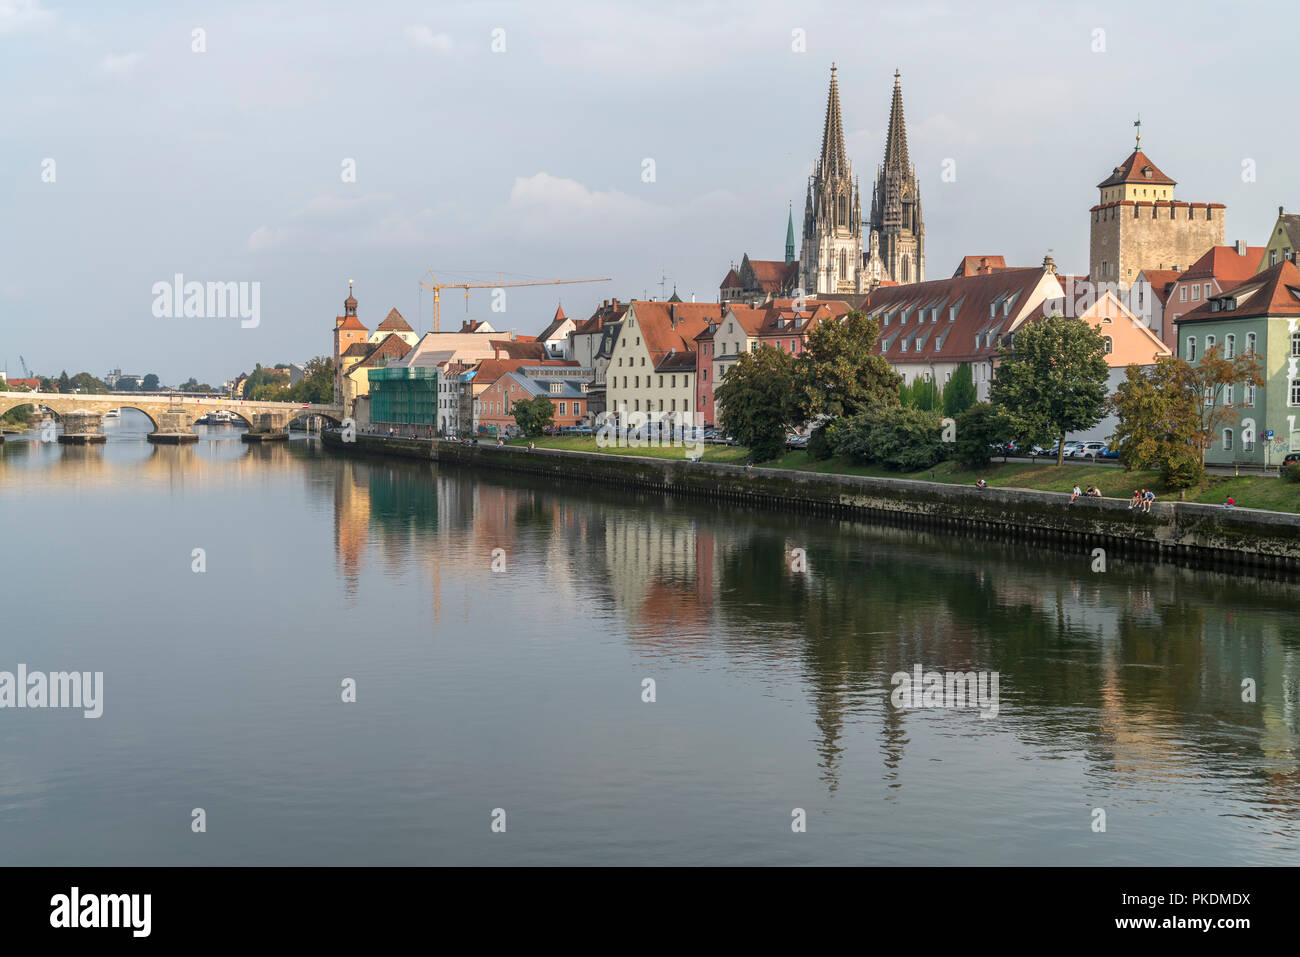 Stadtansicht mit Donau, Altstadt  und Dom St. Peter in Regensburg, Bayern, Deutschland, Europa | cityscape with Danube river and Regensburg Cathedral  Stock Photo